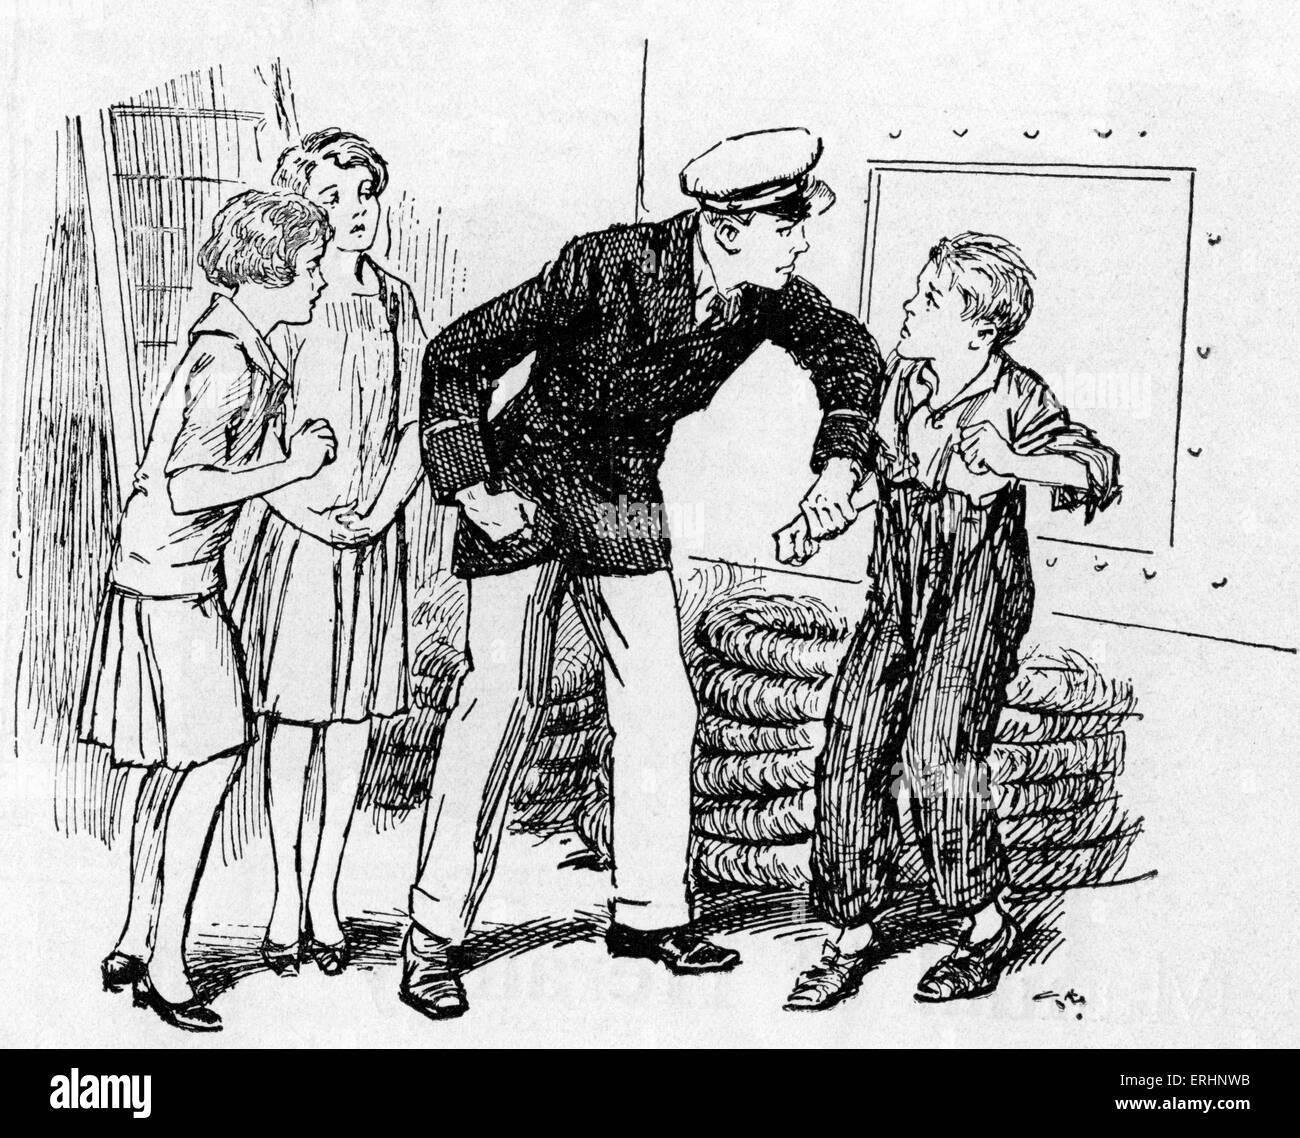 Blinder Passagier - Bildunterschrift lautet: "sie sahen die zerlumpte Gestalt des jungen blinder Passagier". c. 1931. Von "Patsy aus der Wildnis", illustriert von der englischen Buchillustrator, Gordon Frederick Browne (1858-1932). Stockfoto